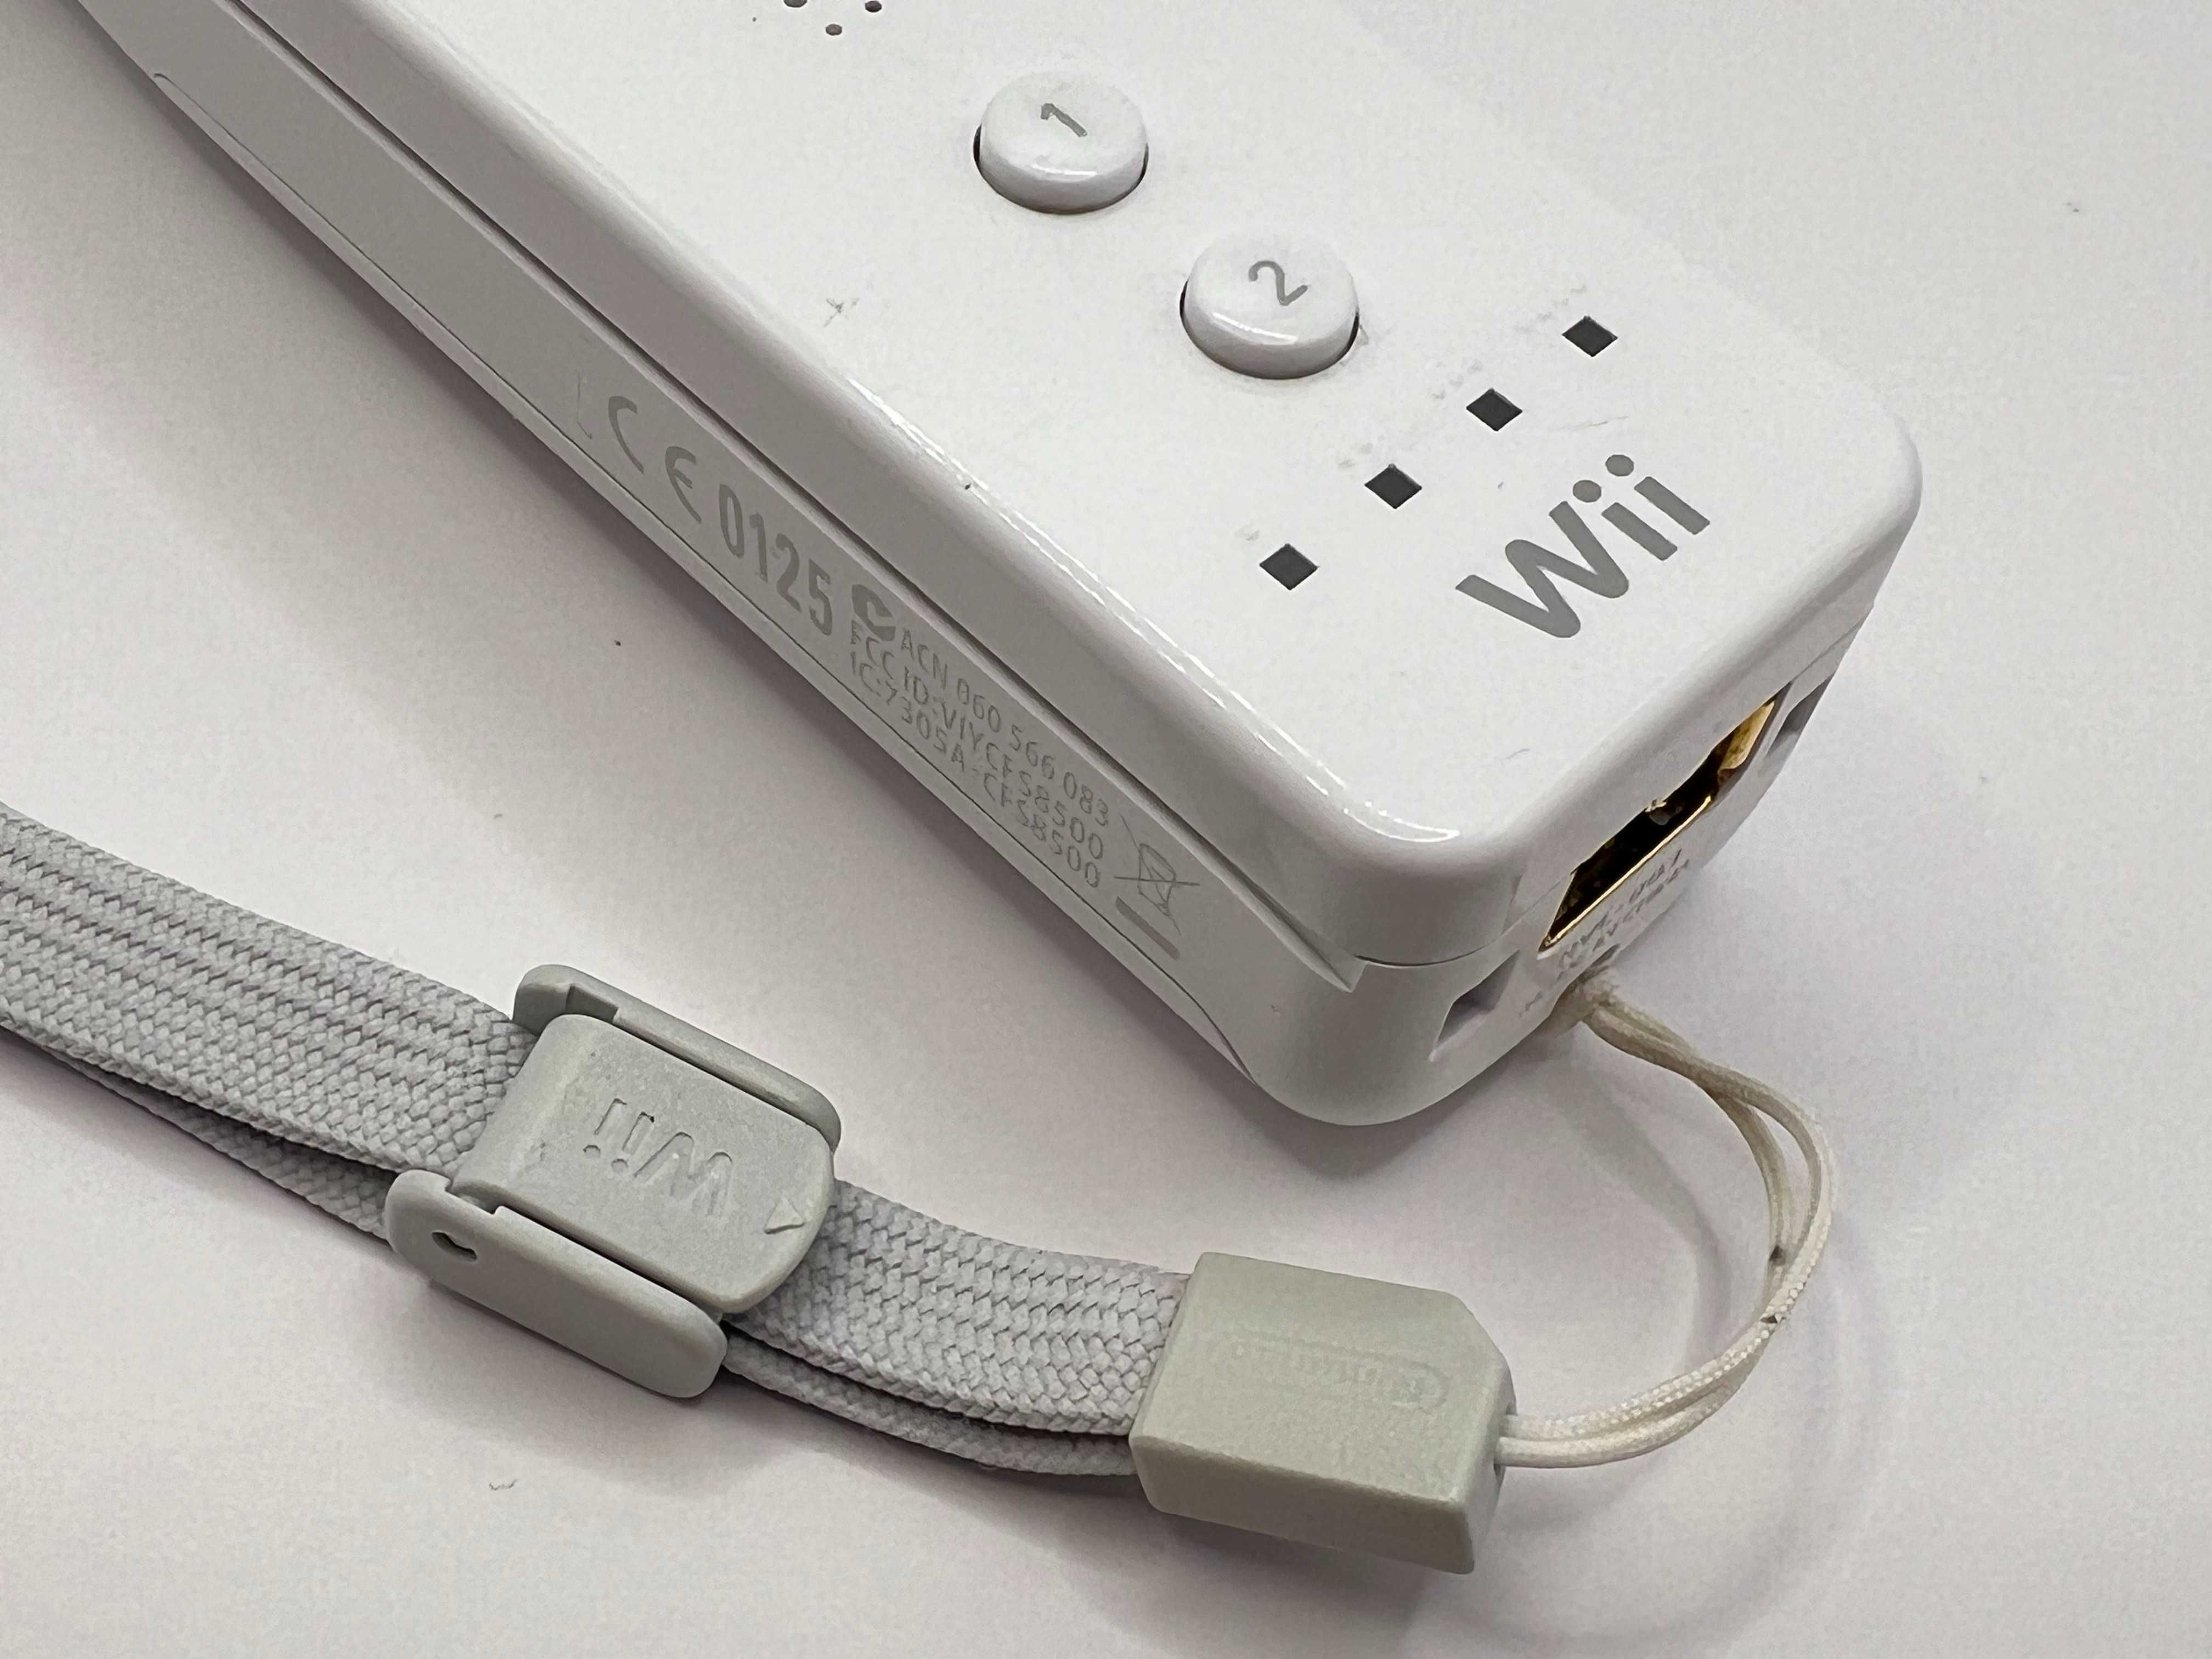 Wii Remote Pilot do konsoli Nintendo Wii RVL-003 100% Oryginał Wiilot